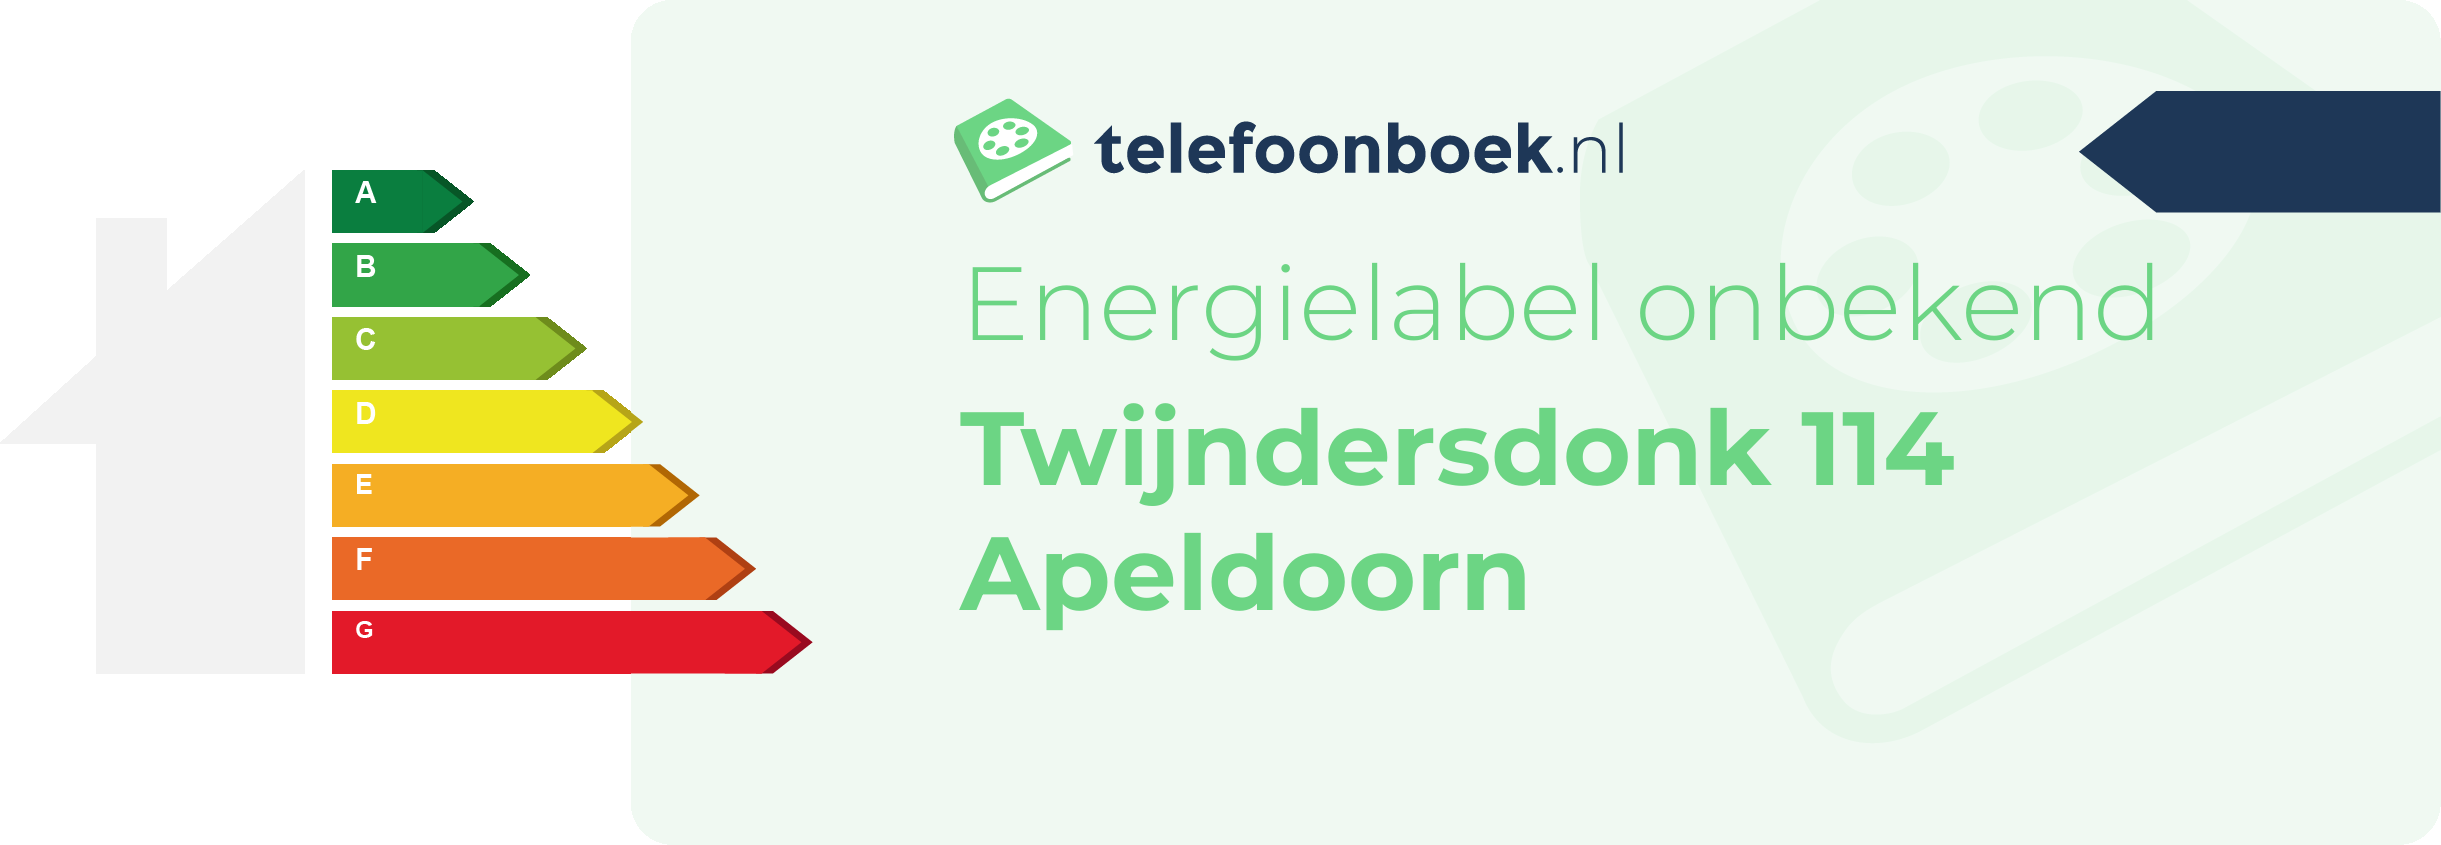 Energielabel Twijndersdonk 114 Apeldoorn